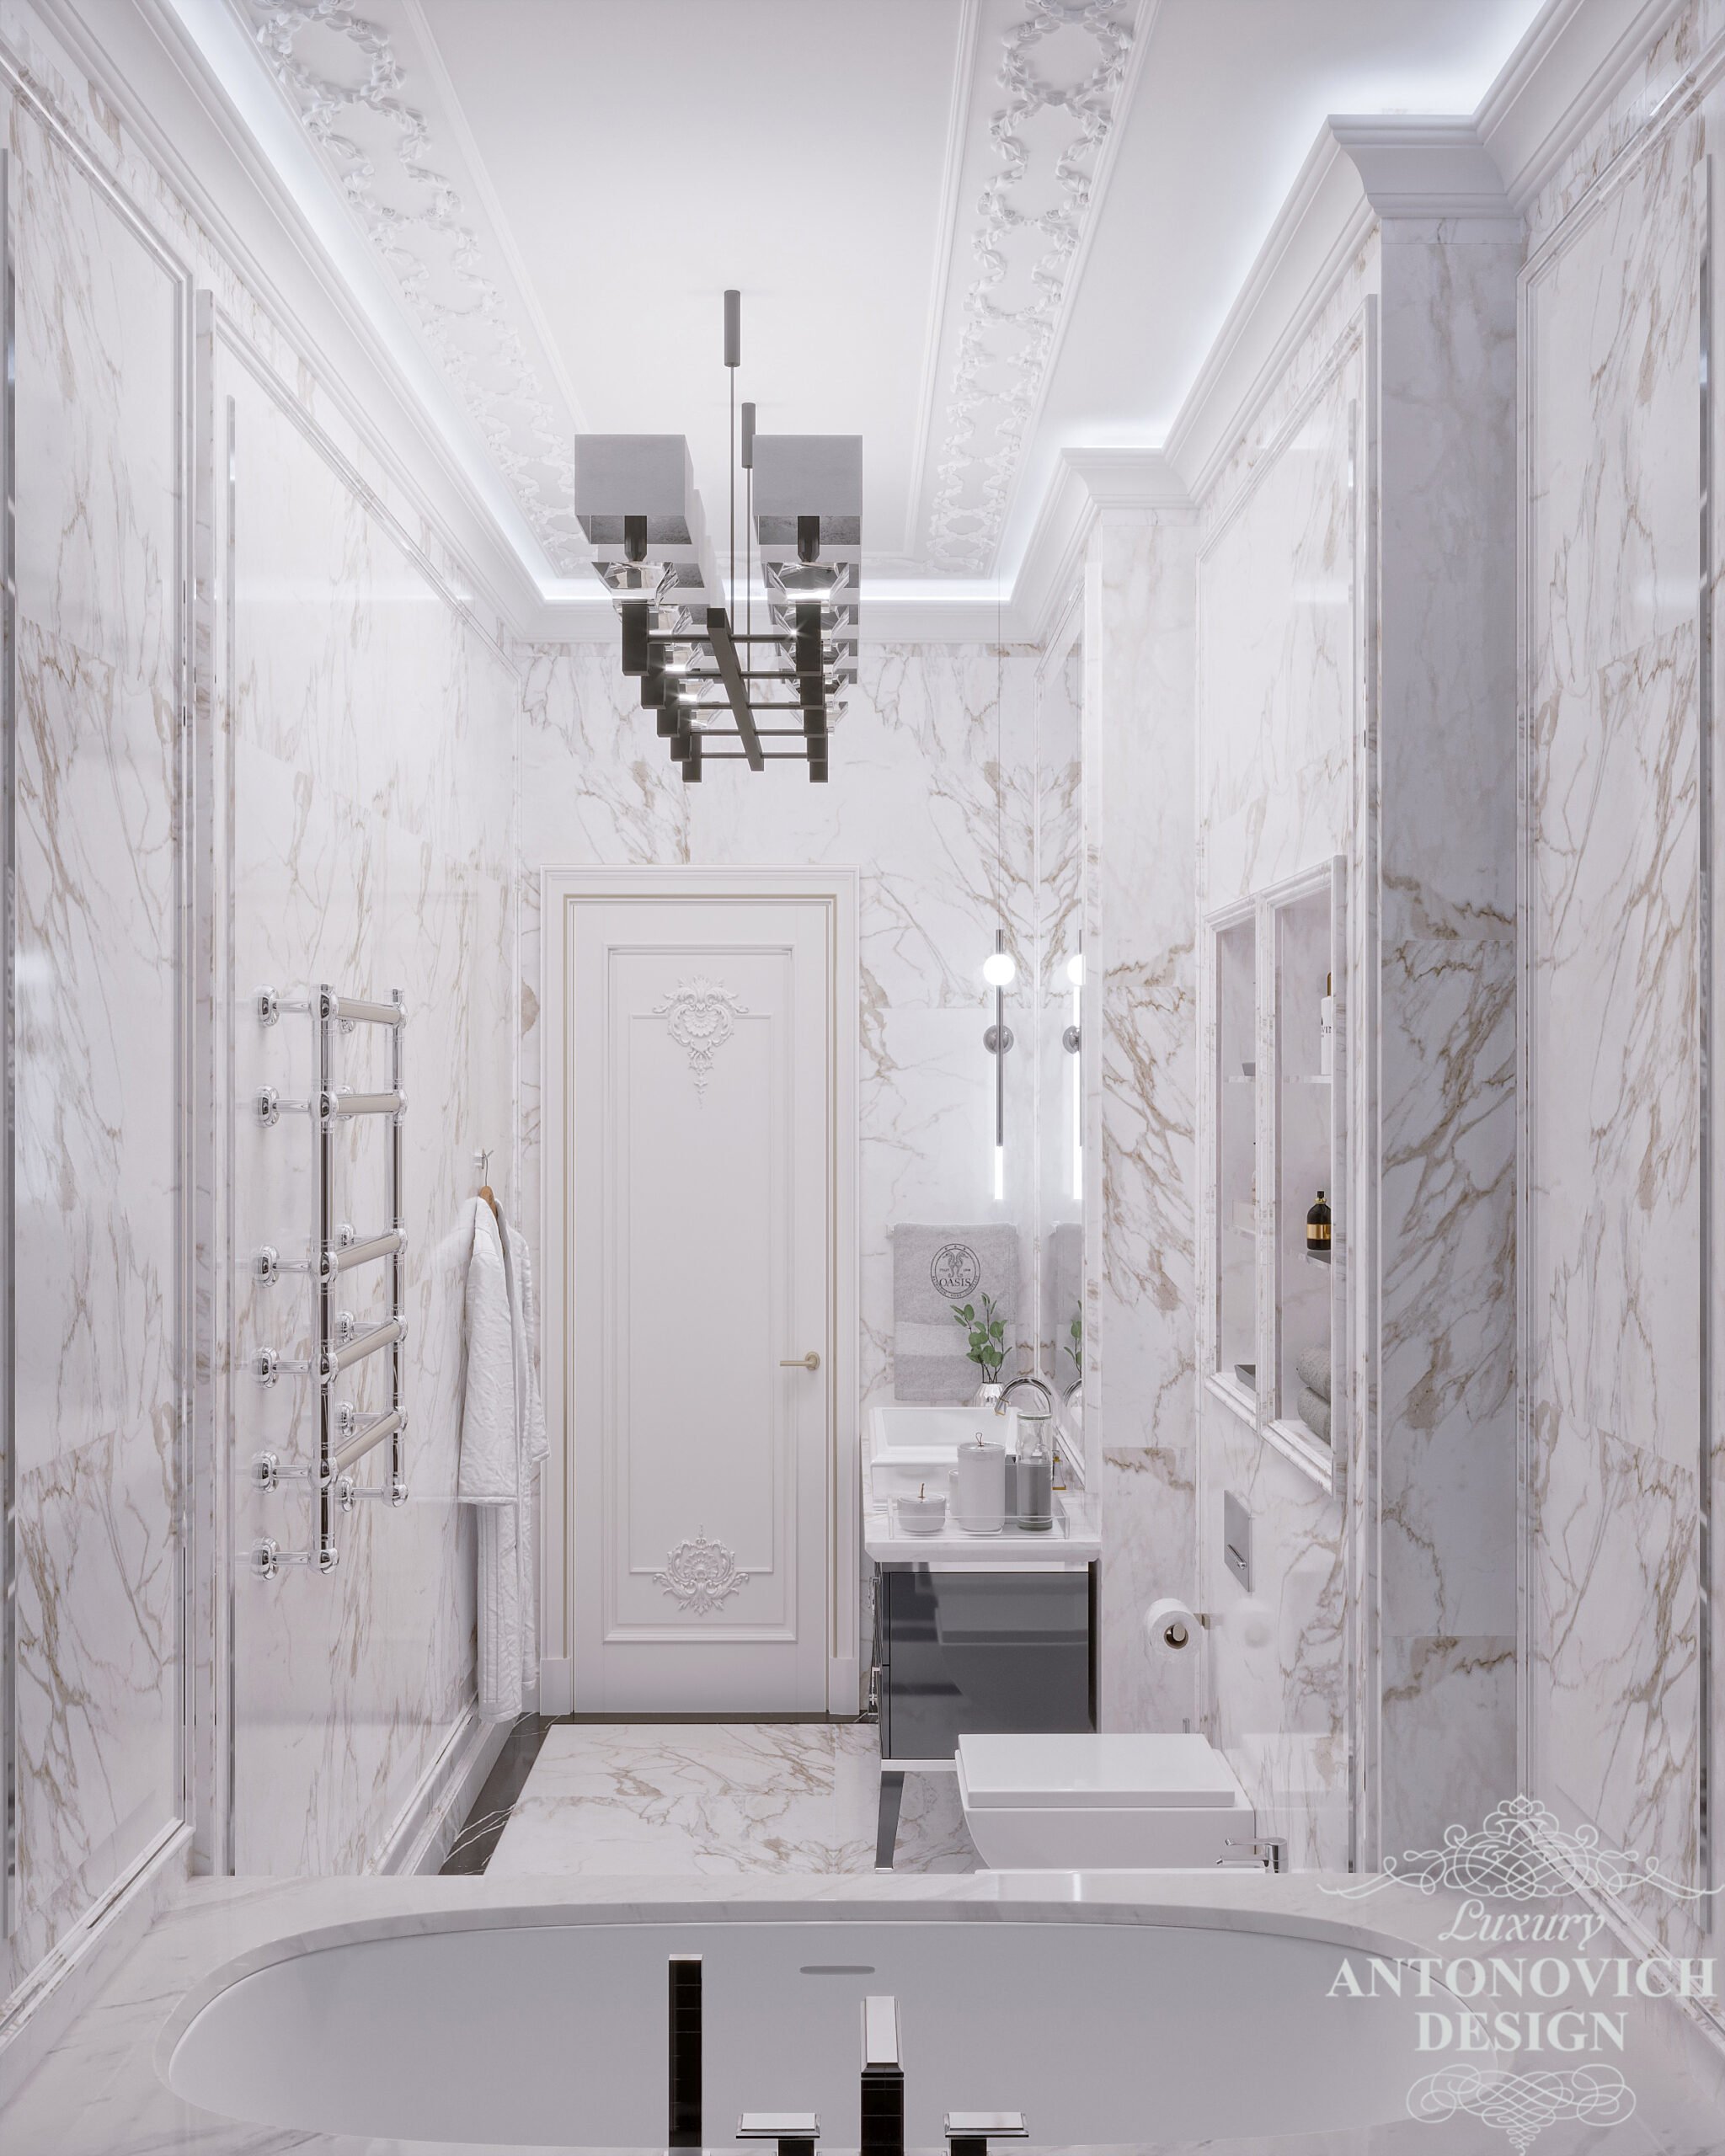 Дизайн современной ванной с высокими потолками в стильных светлых оттенках и изящным декором